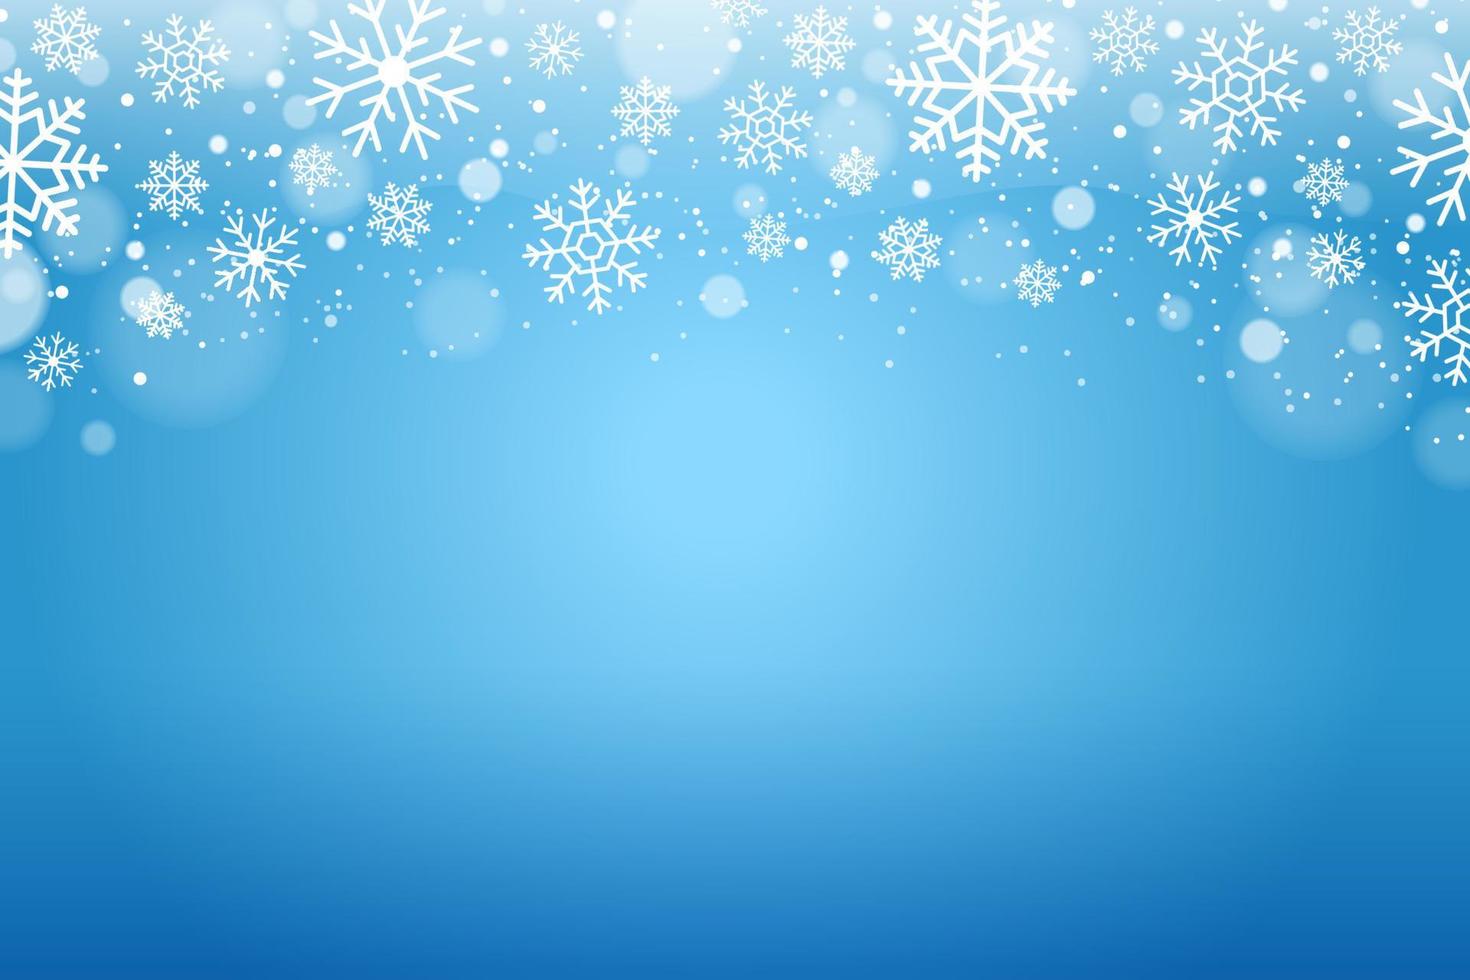 Schnee Winter Hintergrund vektor